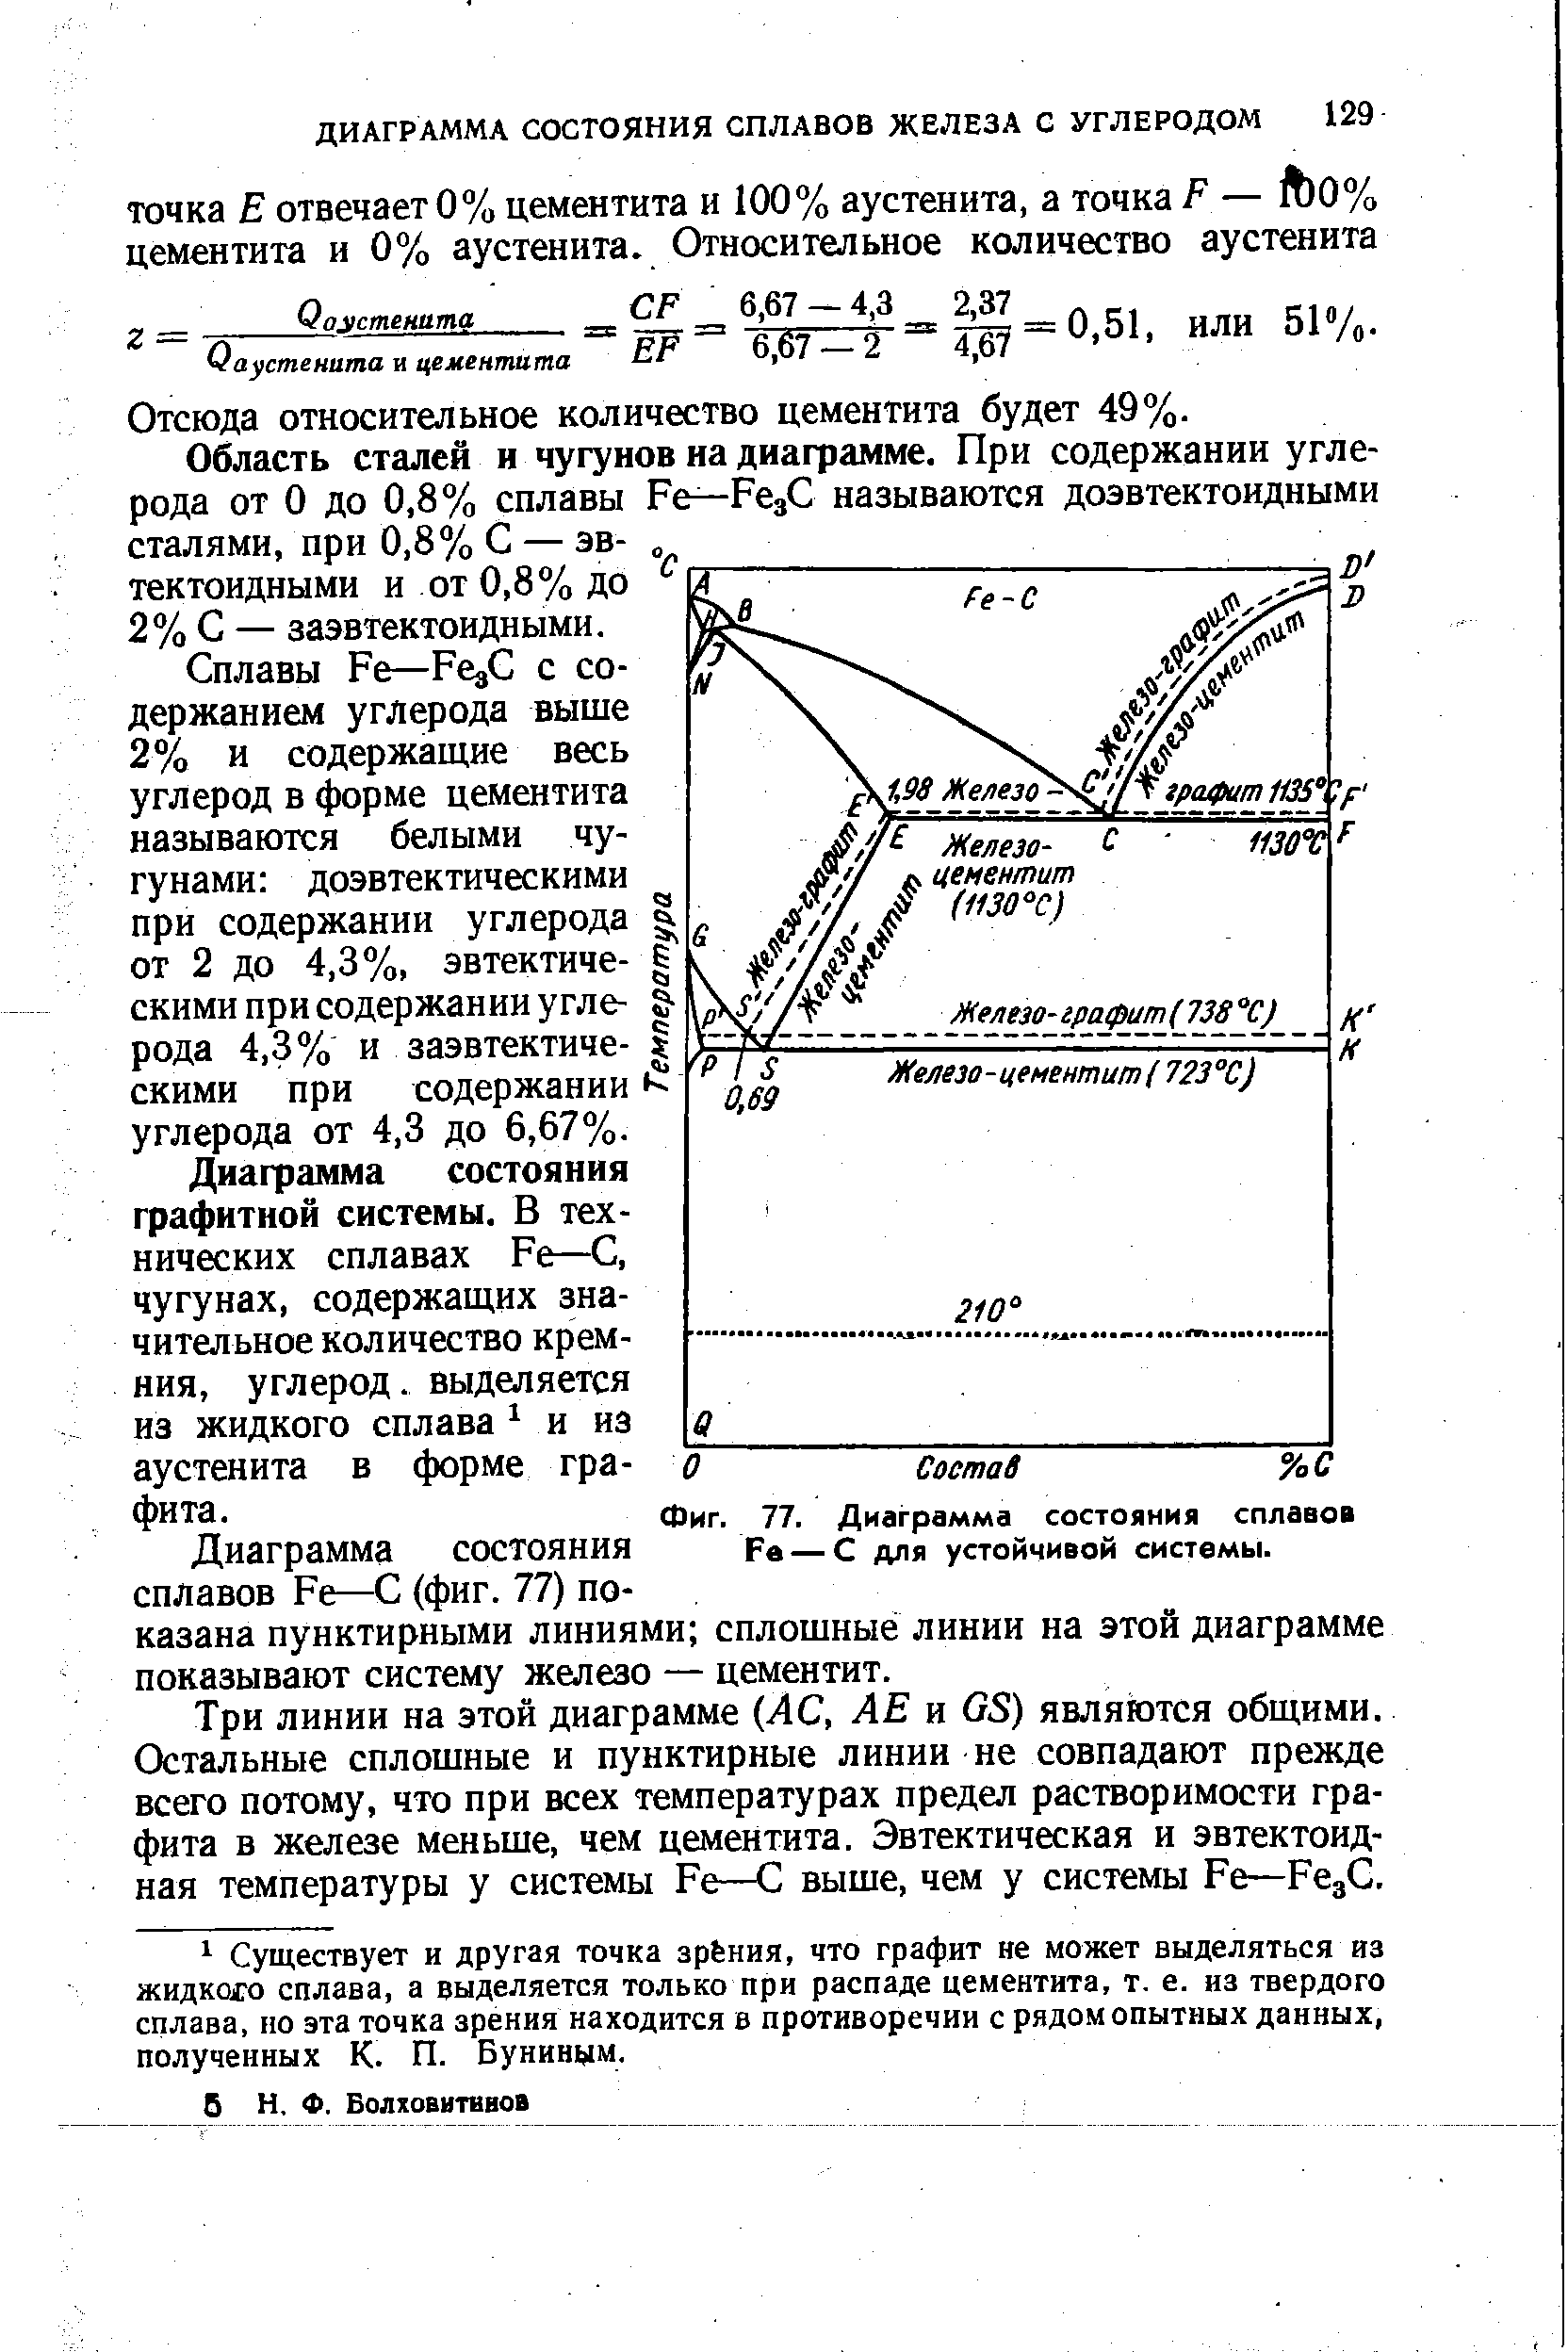 Фиг. 77. Диаграмма состояния сплавов Fe — С для устойчивой системы.
